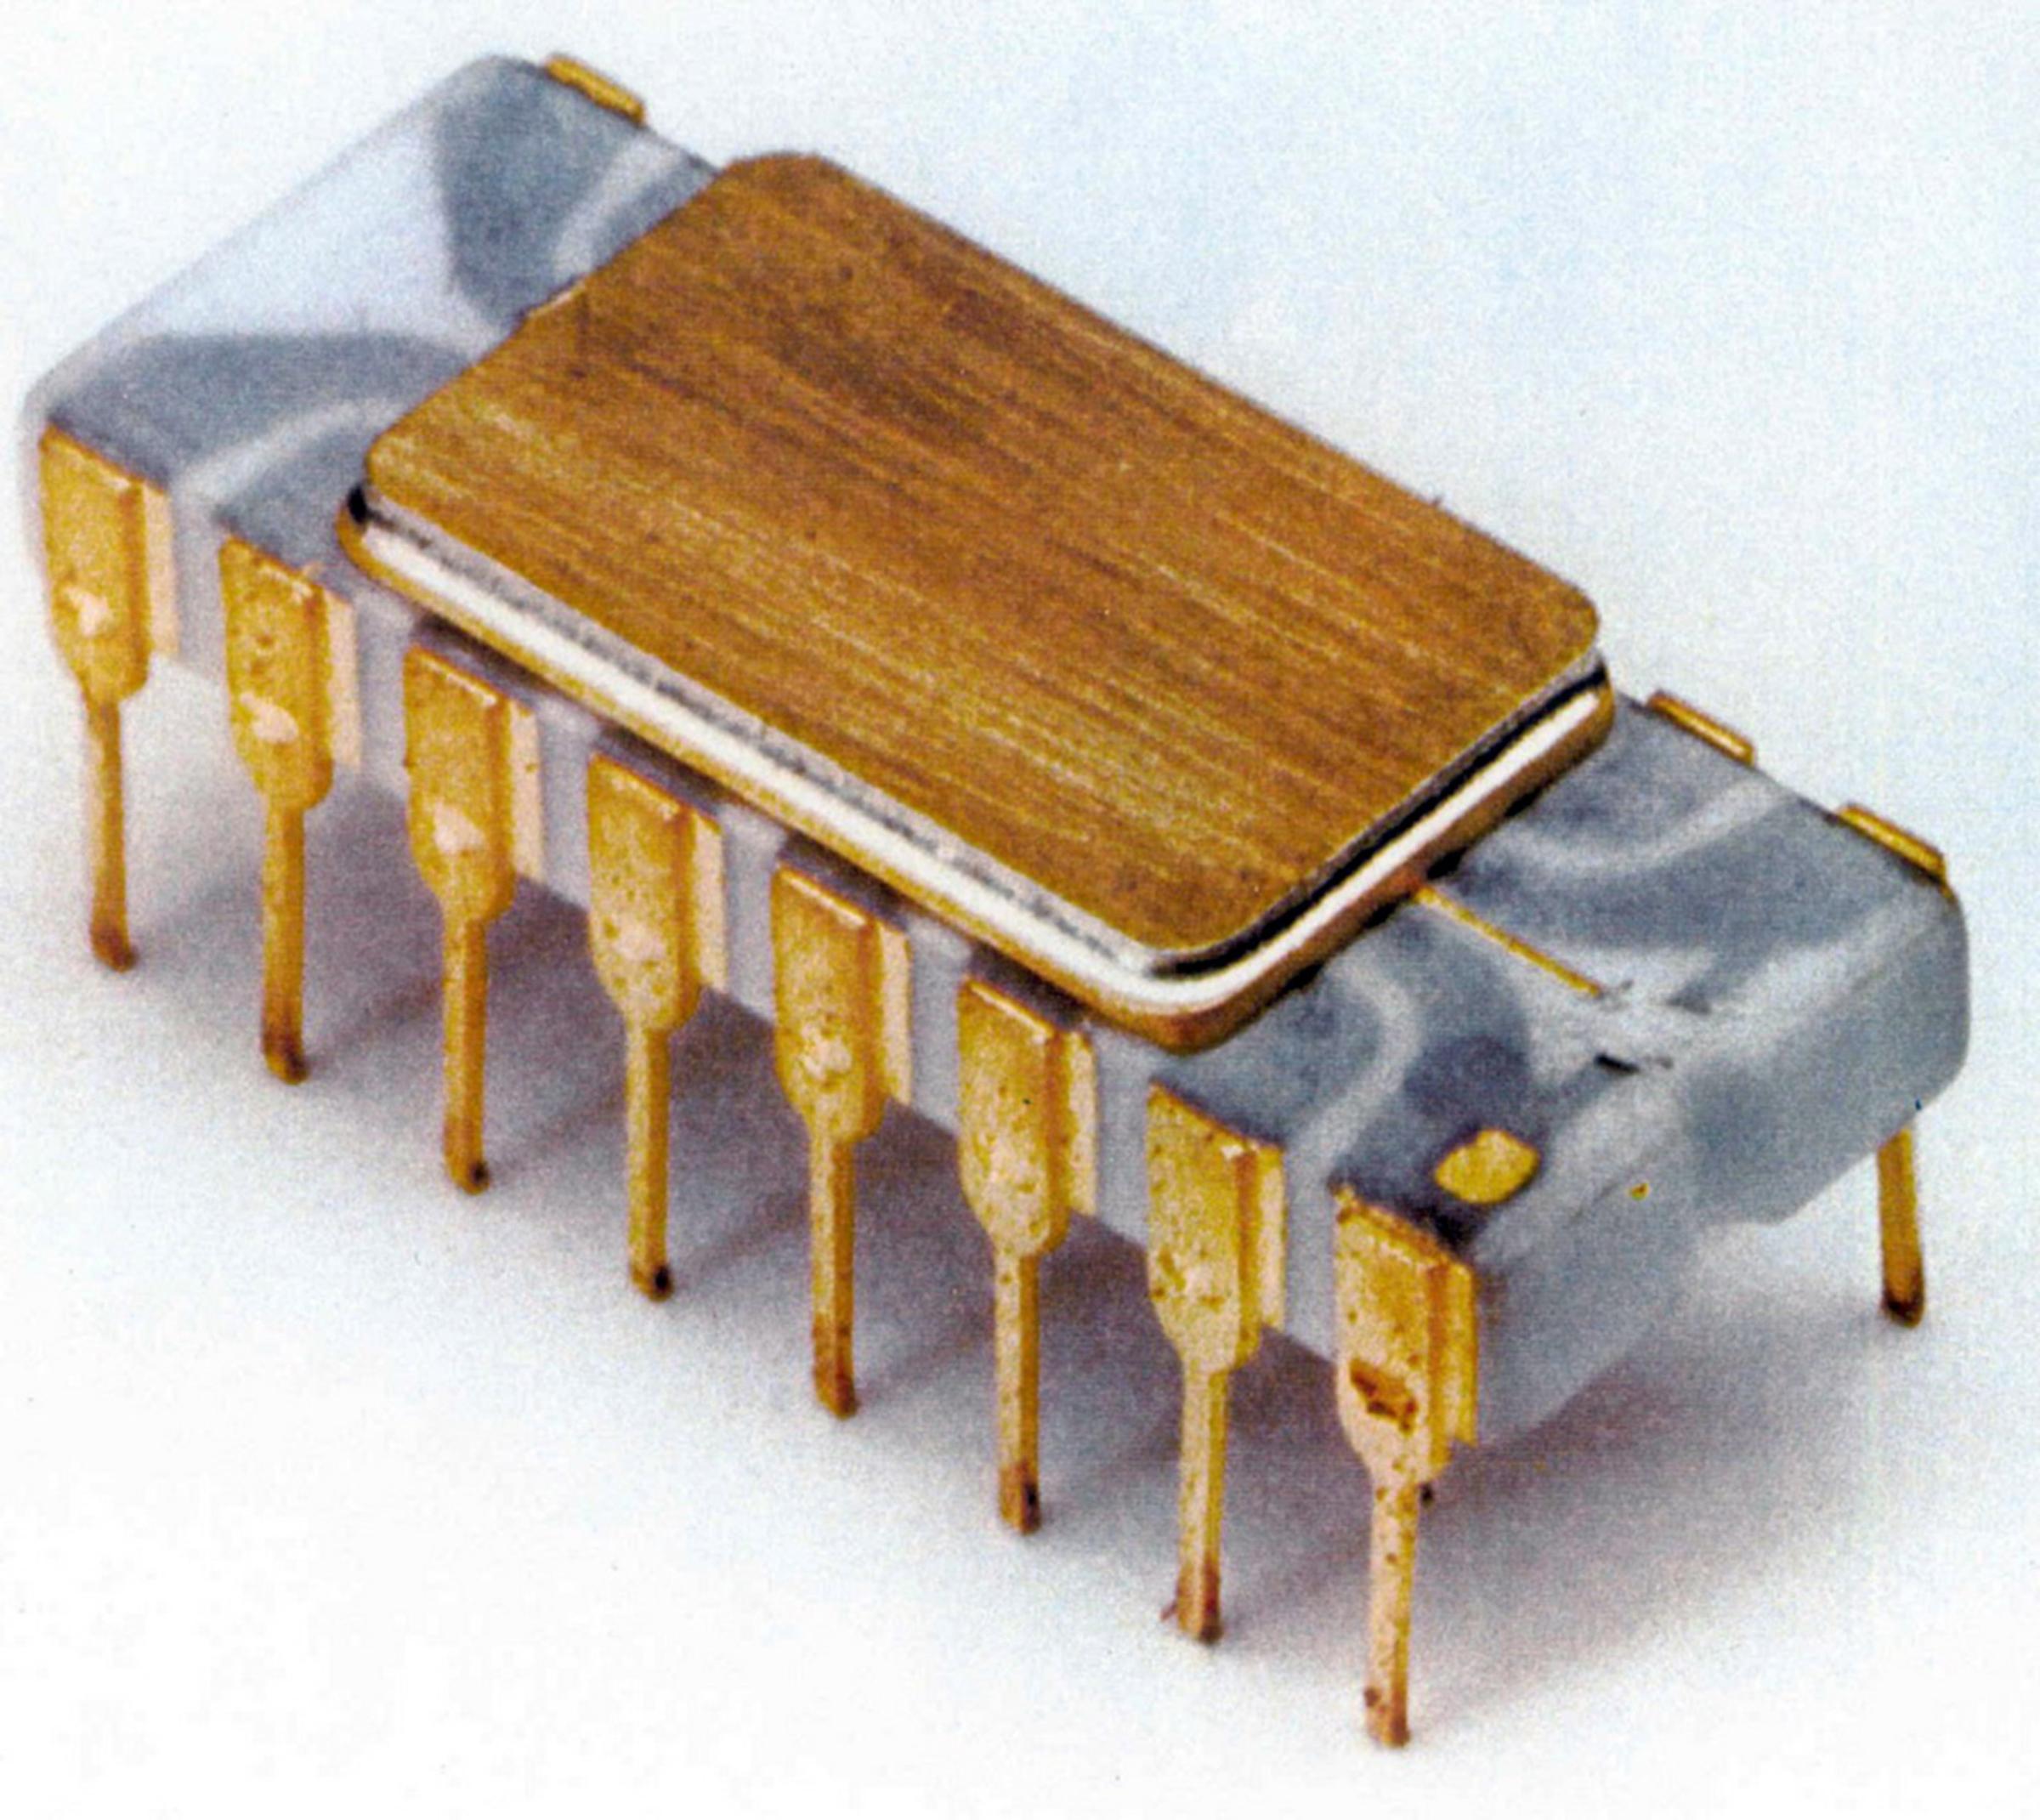 1st microprocessor, 1971 : Intel 4004